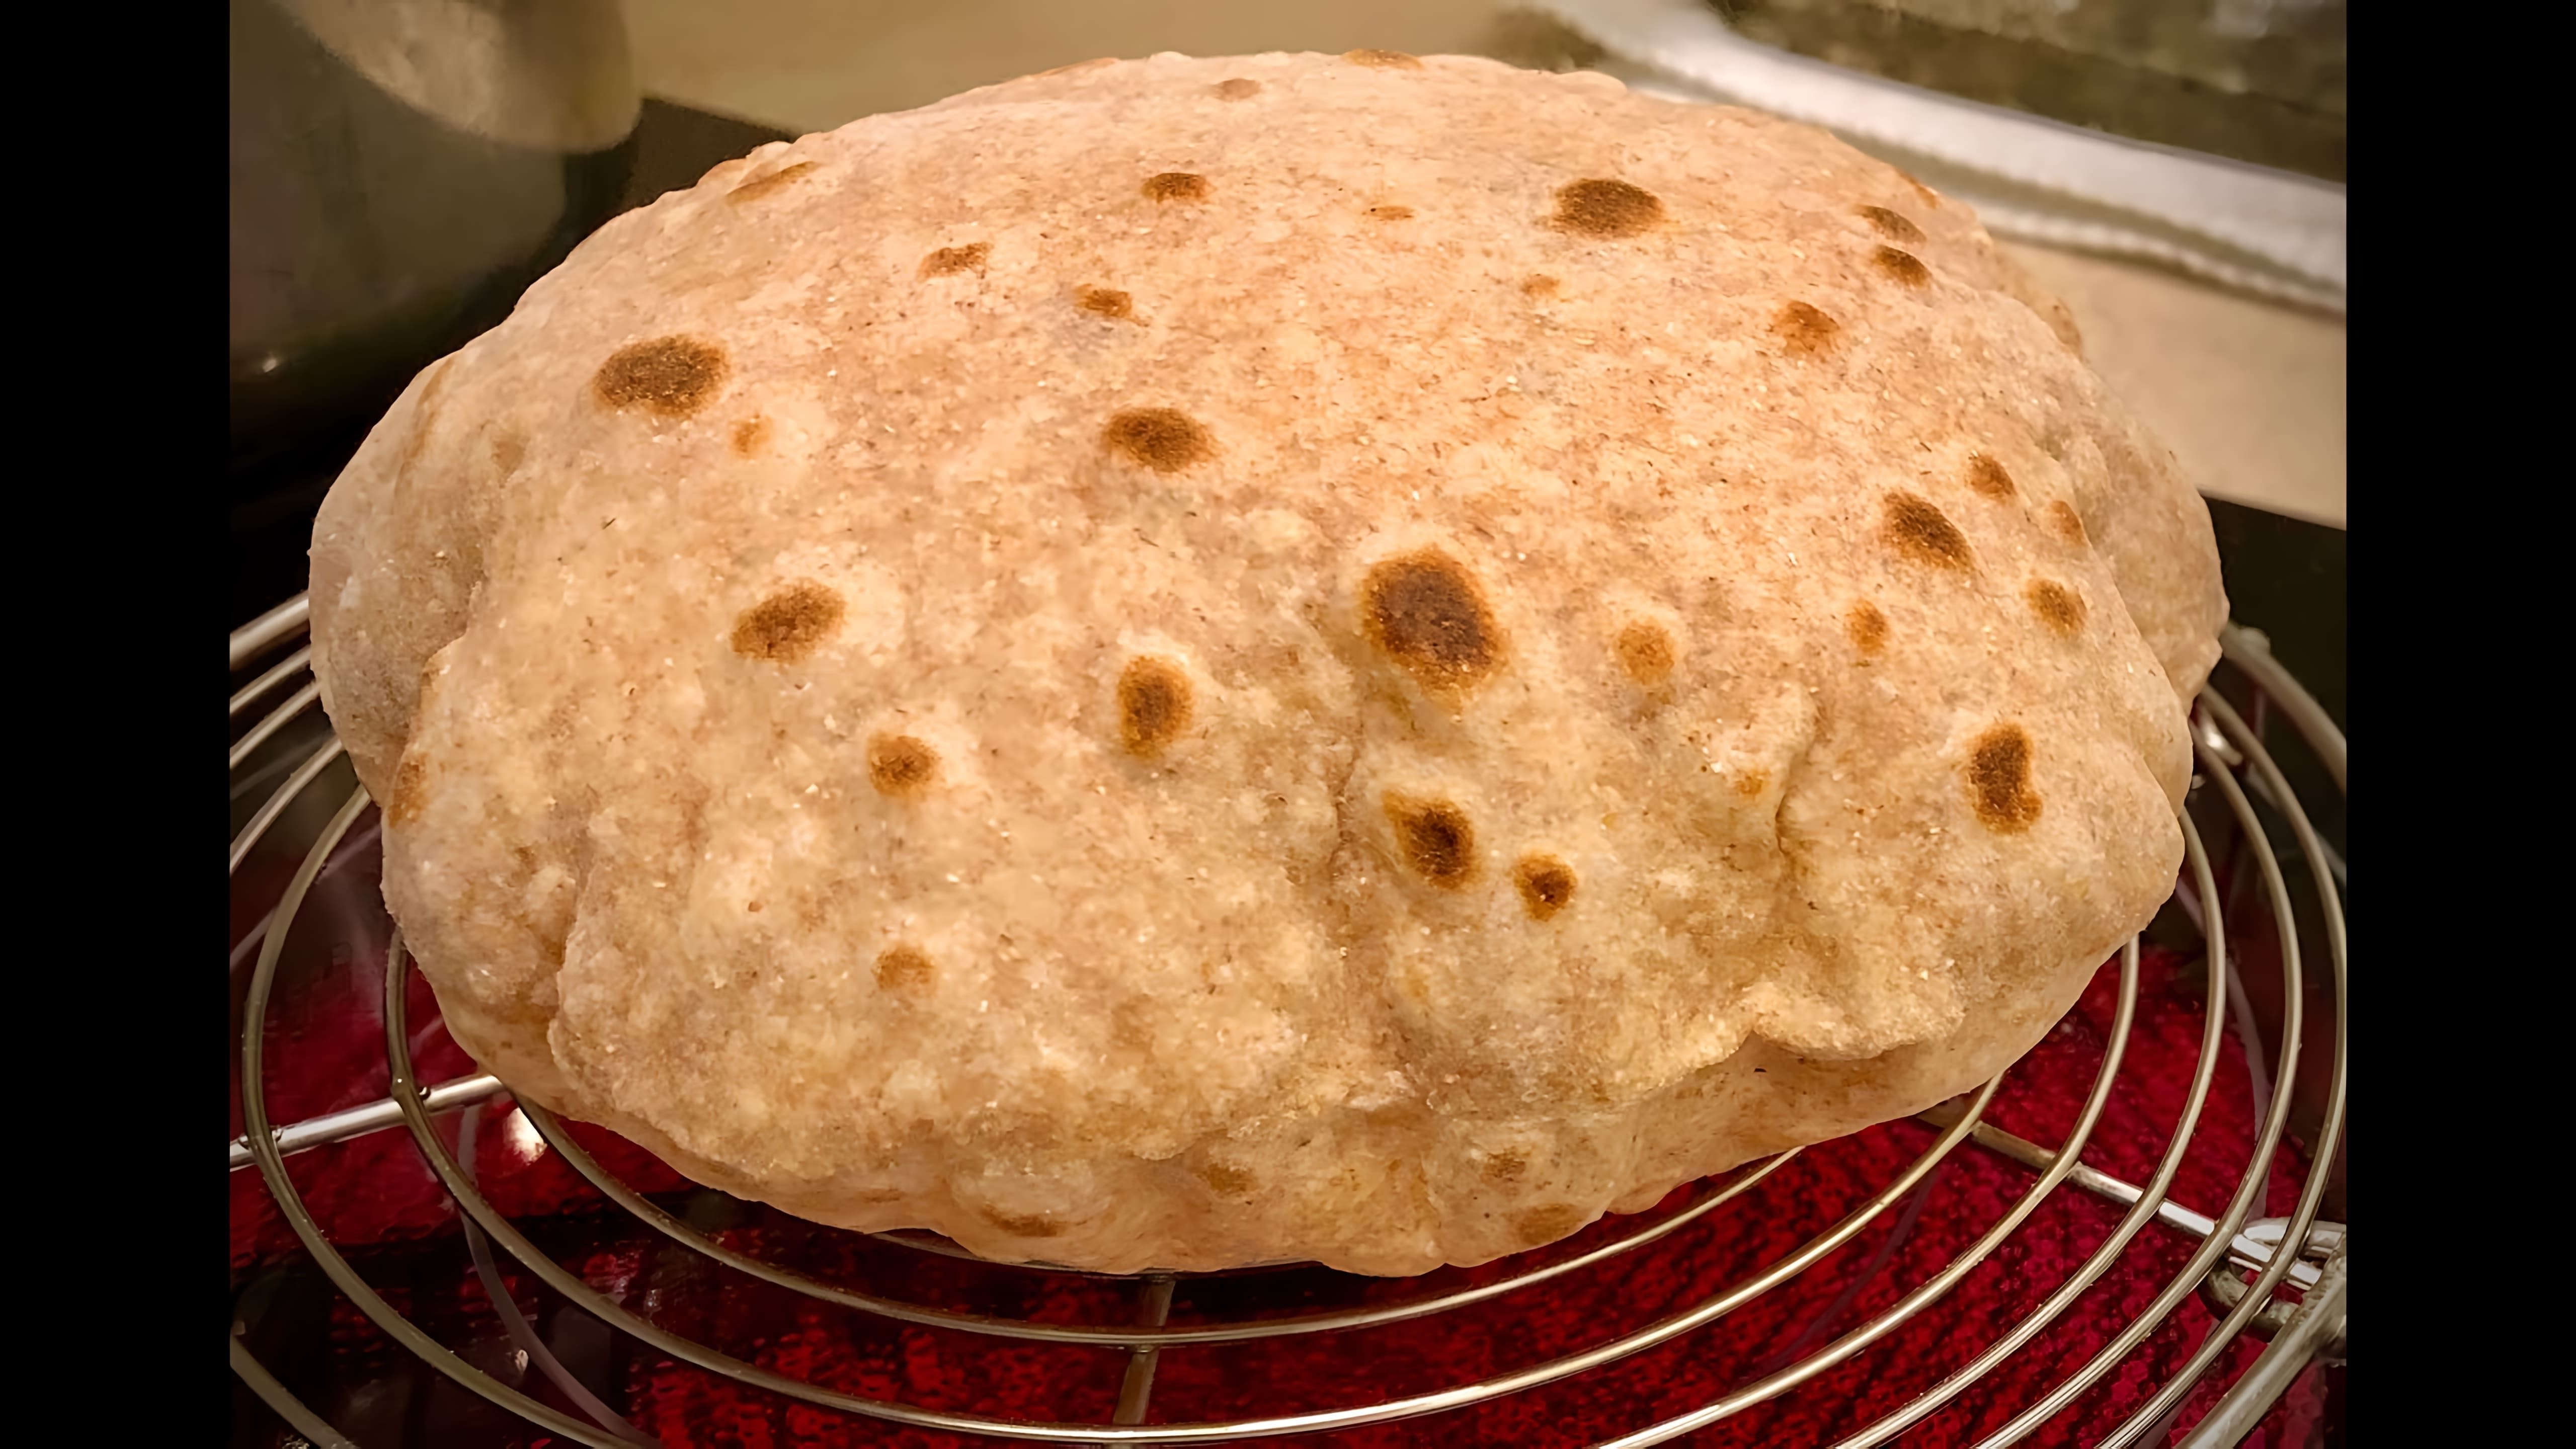 Чапати - традиционный плоский хлеб, который обычно подают с карри и овощами в индийской кухне